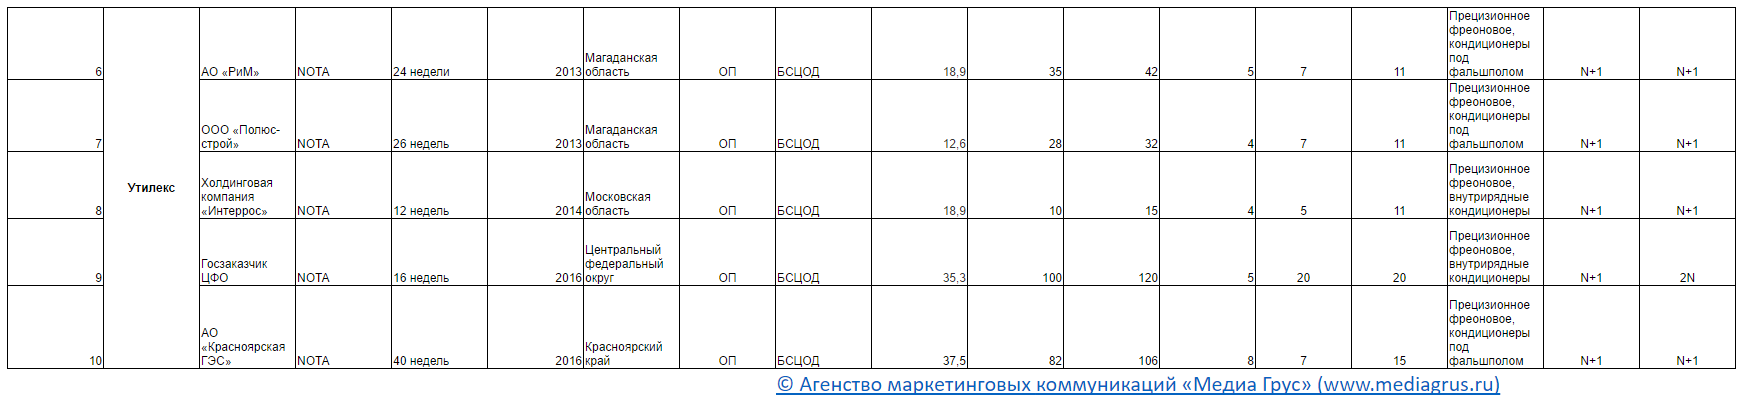 Список модульных ЦОД инсталлированных в России